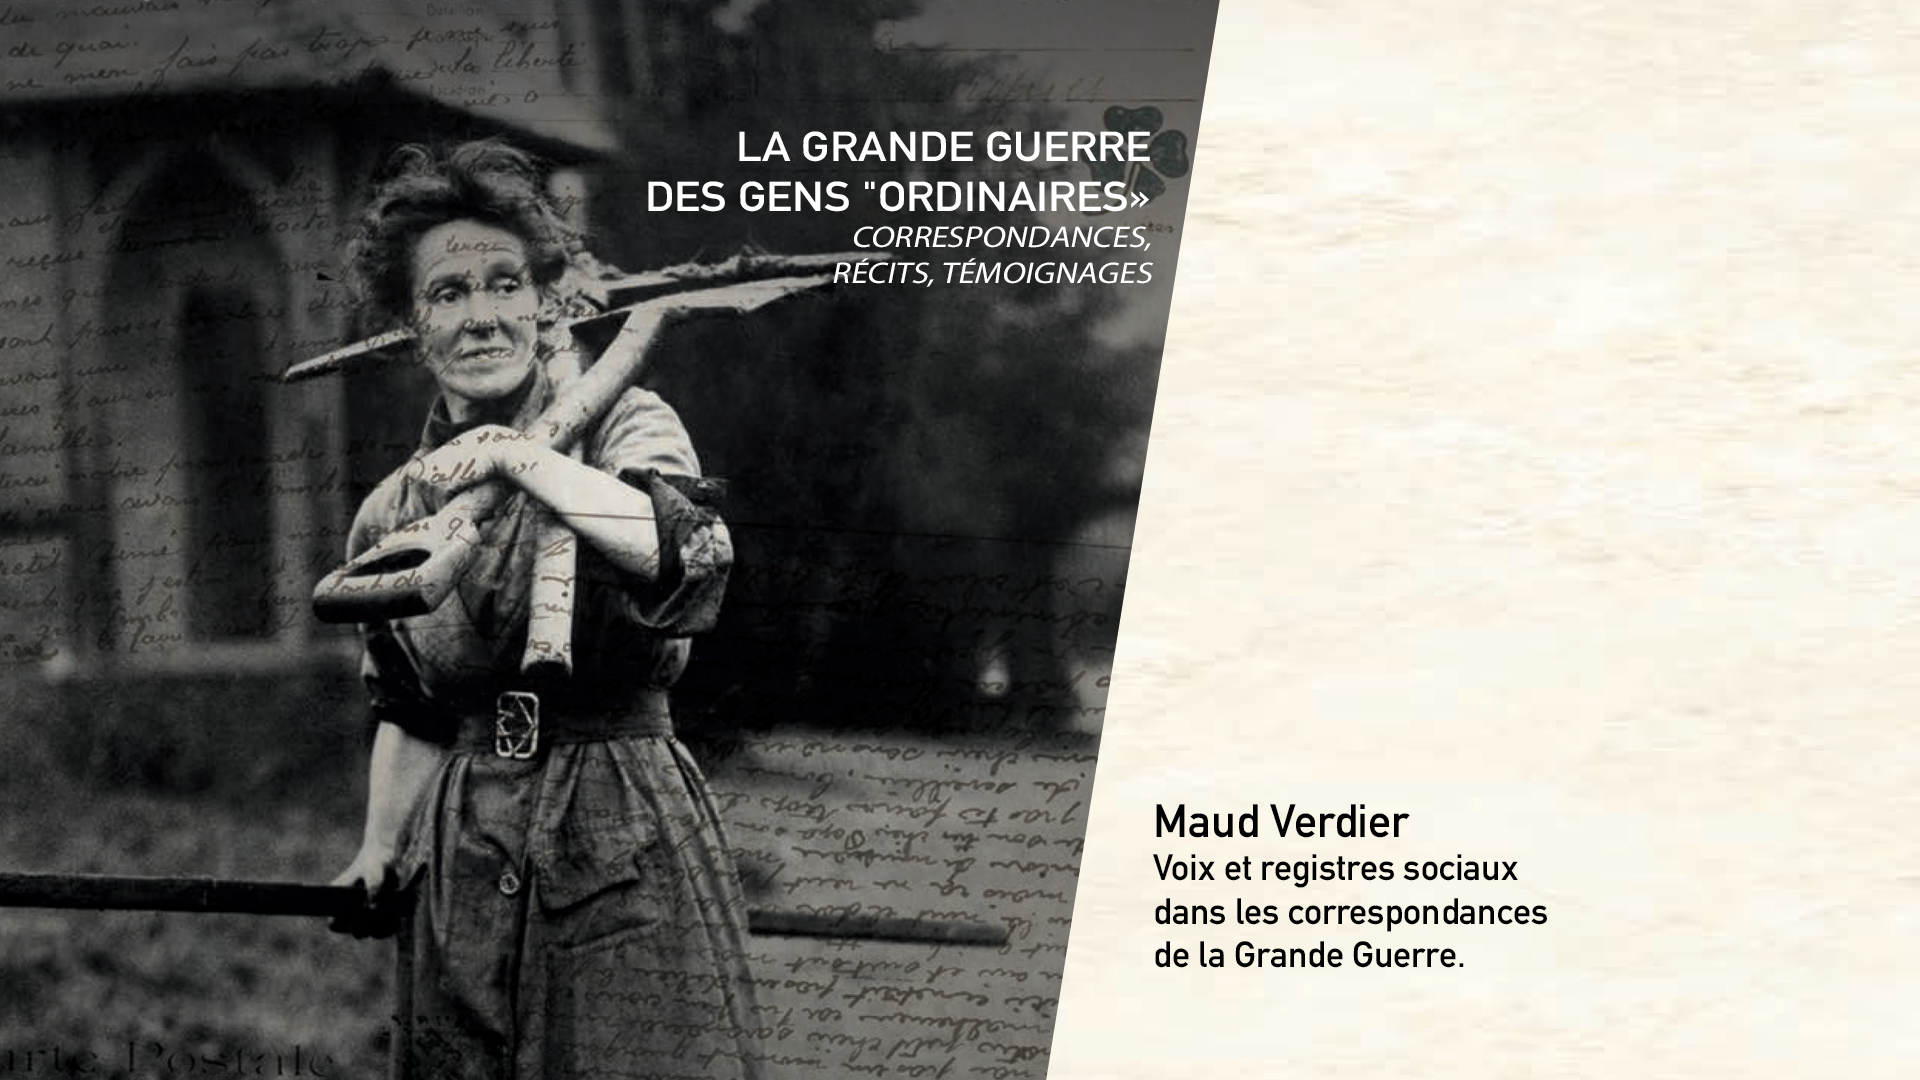 Maud Verdier - Voix et registres sociaux dans les correspondances de la Grande Guerre.